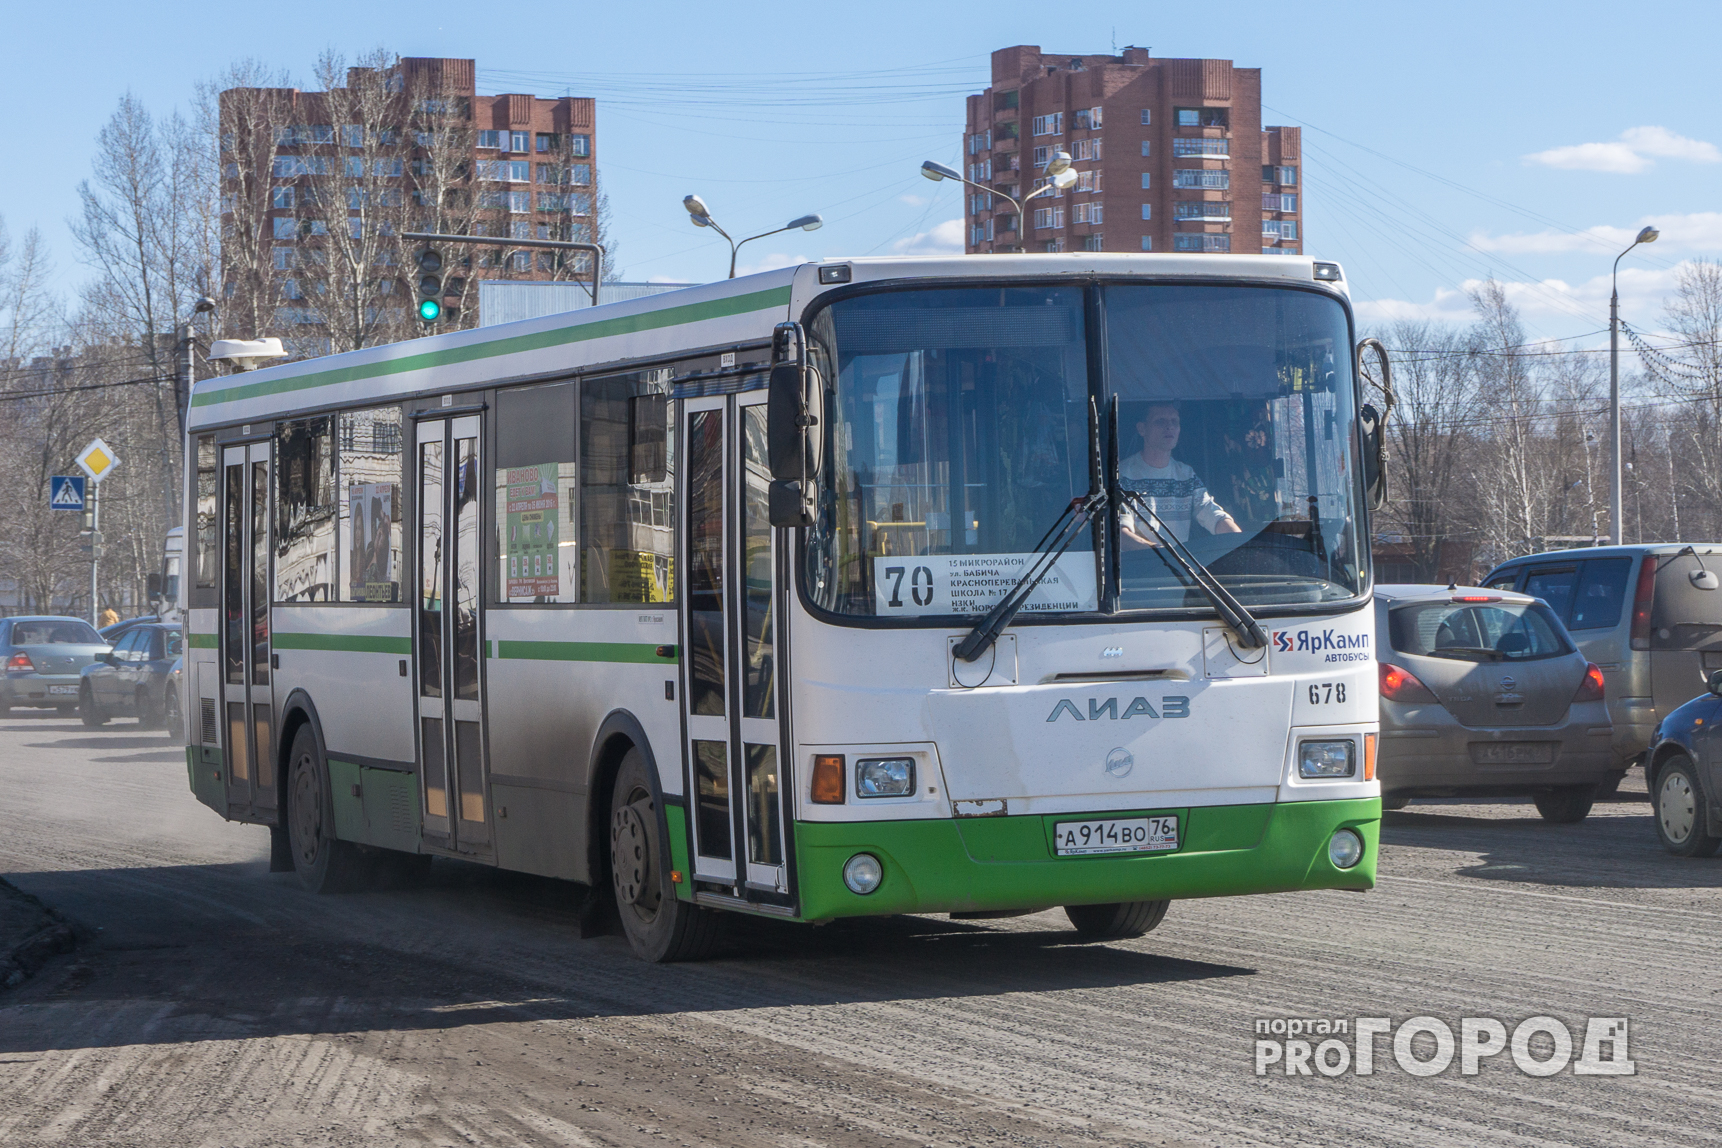 Из-за многомиллионного долга в Ярославле может встать общественный транспорт